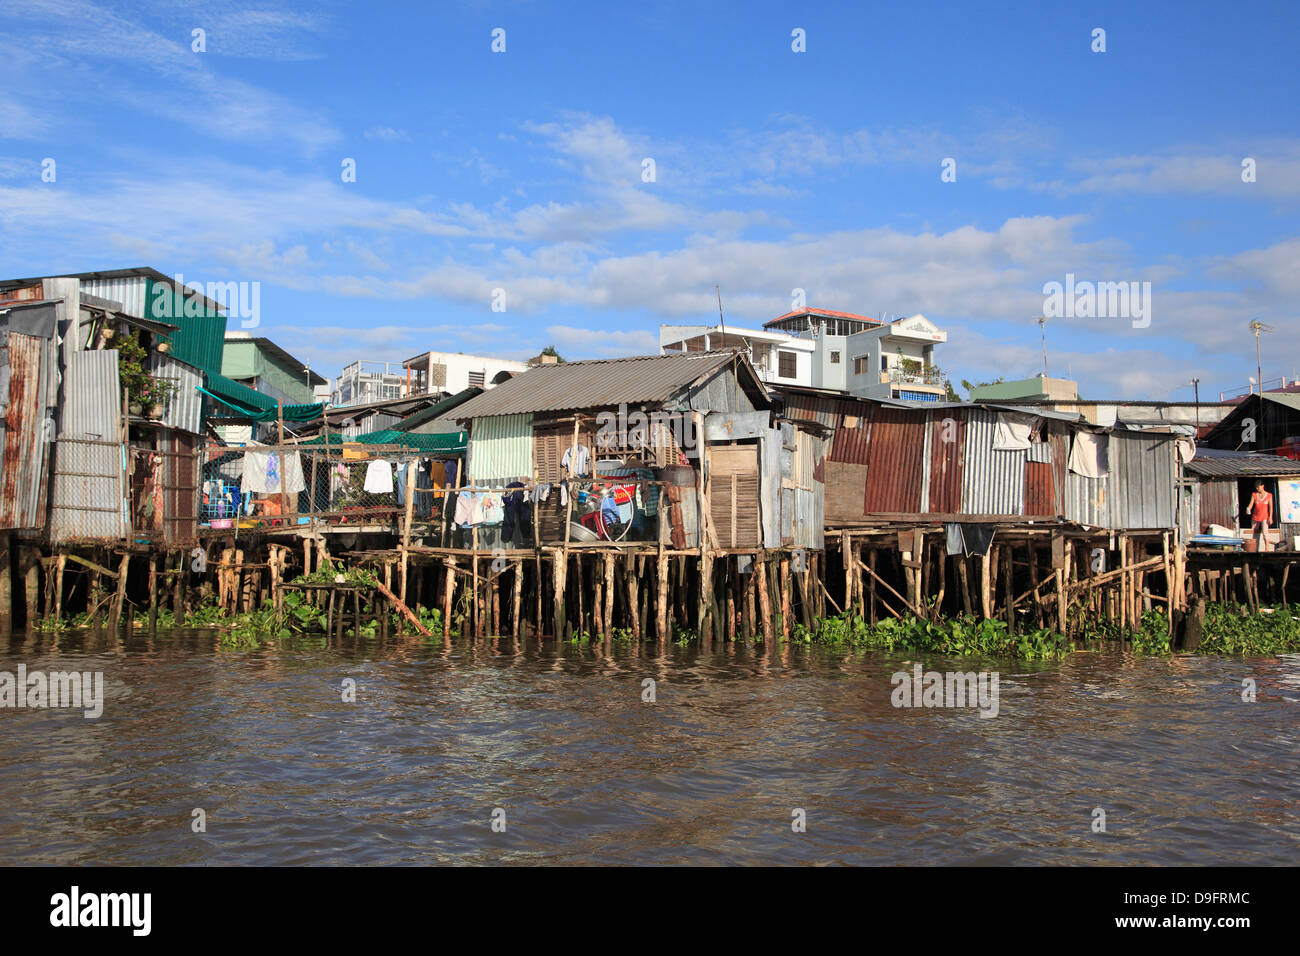 Des maisons sur pilotis au bord de l'eau, Can Tho, Delta du Mékong, Mékong, Province de Can Tho, Vietnam, Indochine, Asie du sud-est Banque D'Images